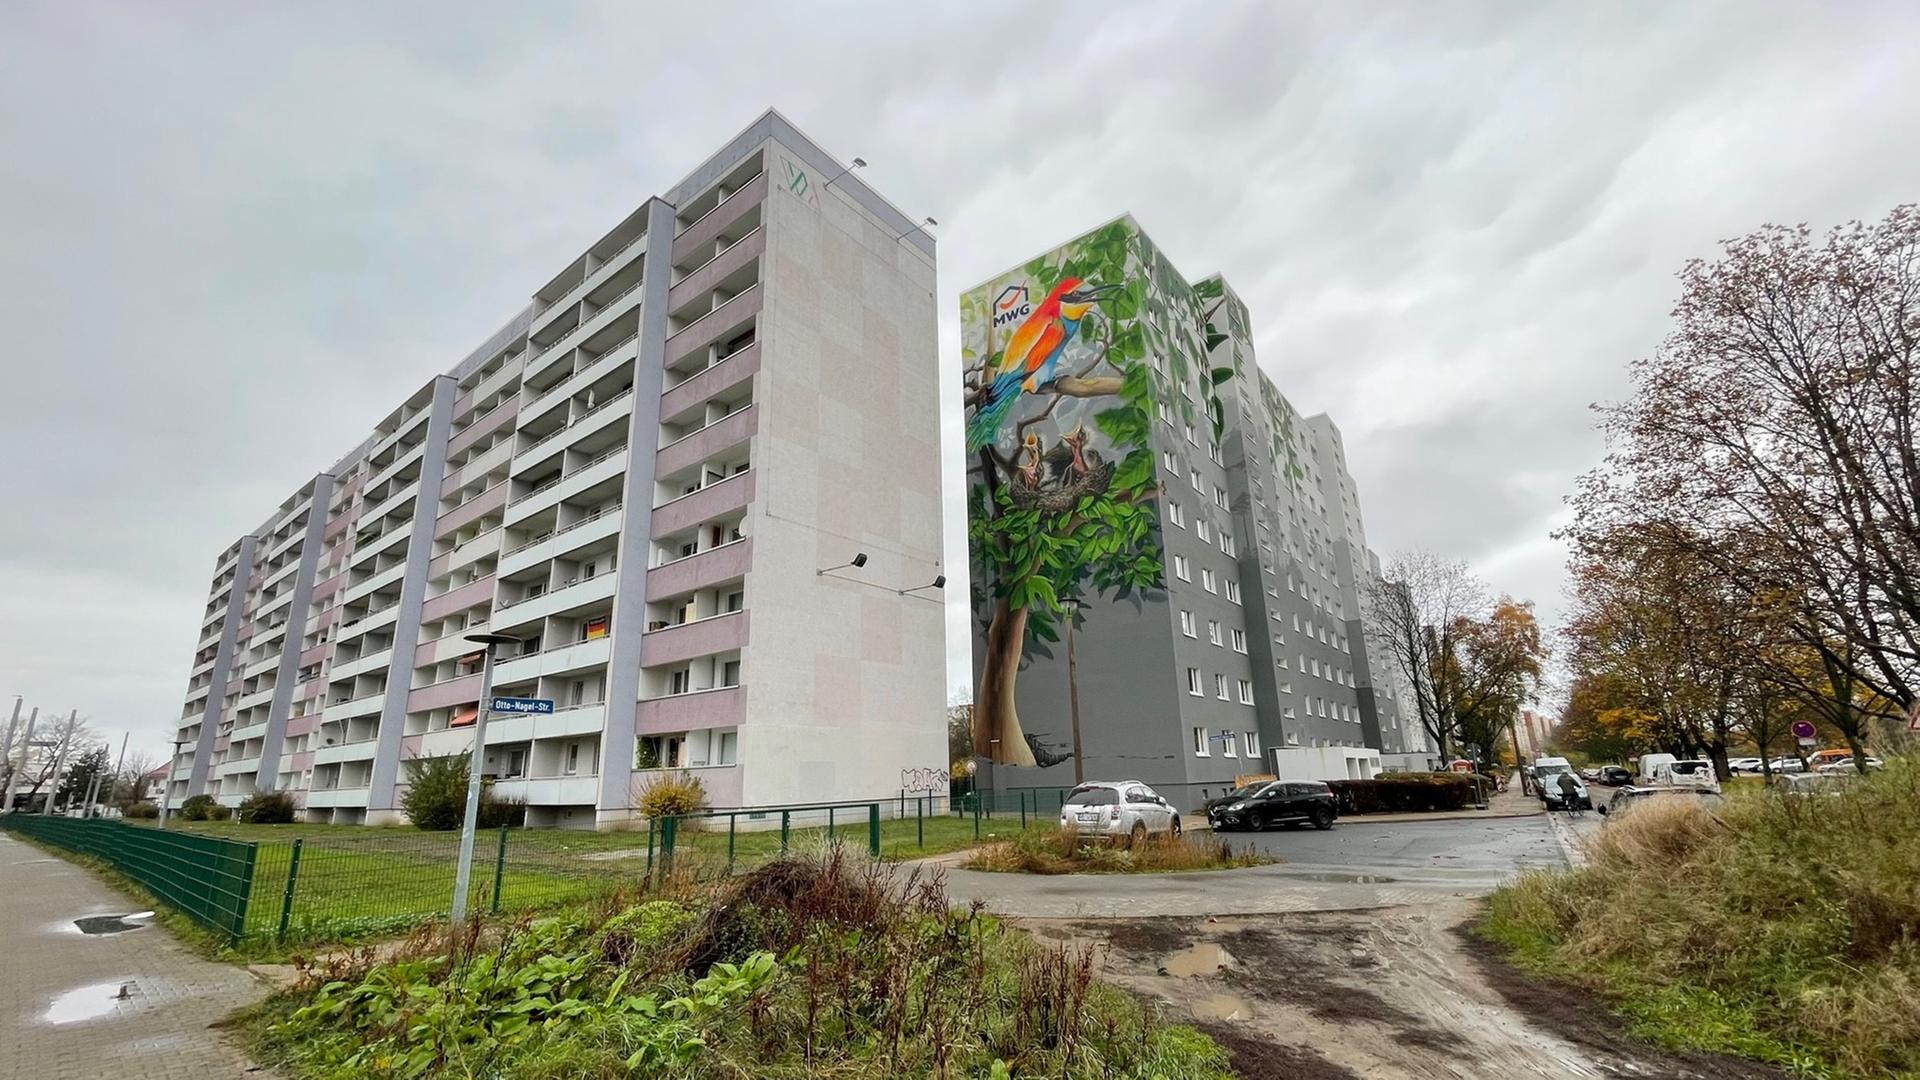 Das Foto zeigt zwei frisch sanierter Zehngeschosser in grau-türkis. An der Frontseite ist ein Graffiti in Form eines Baums, der durch einen Spalt im Beton bis hoch in die zehnte Etage wächst. Hier investiert die MWG, Sachsen-Anhalts größte Wohnungsgenossenschaft in den Umbau eines 45 Jahre alten Plattenbaus. 